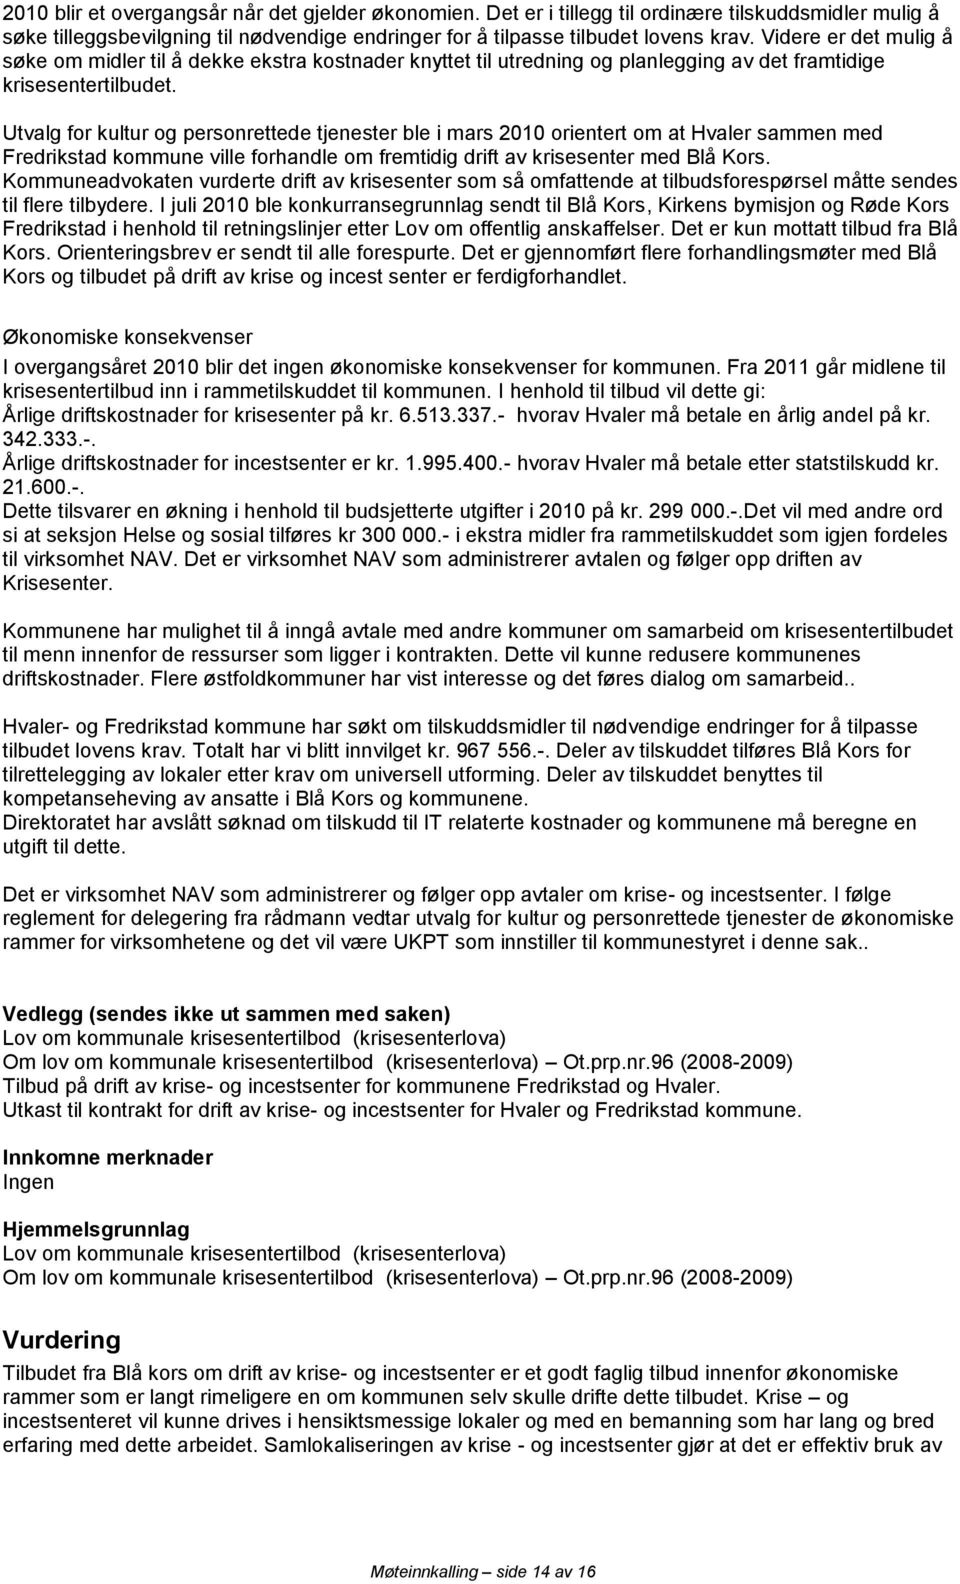 Utvalg for kultur og personrettede tjenester ble i mars 2010 orientert om at Hvaler sammen med Fredrikstad kommune ville forhandle om fremtidig drift av krisesenter med Blå Kors.